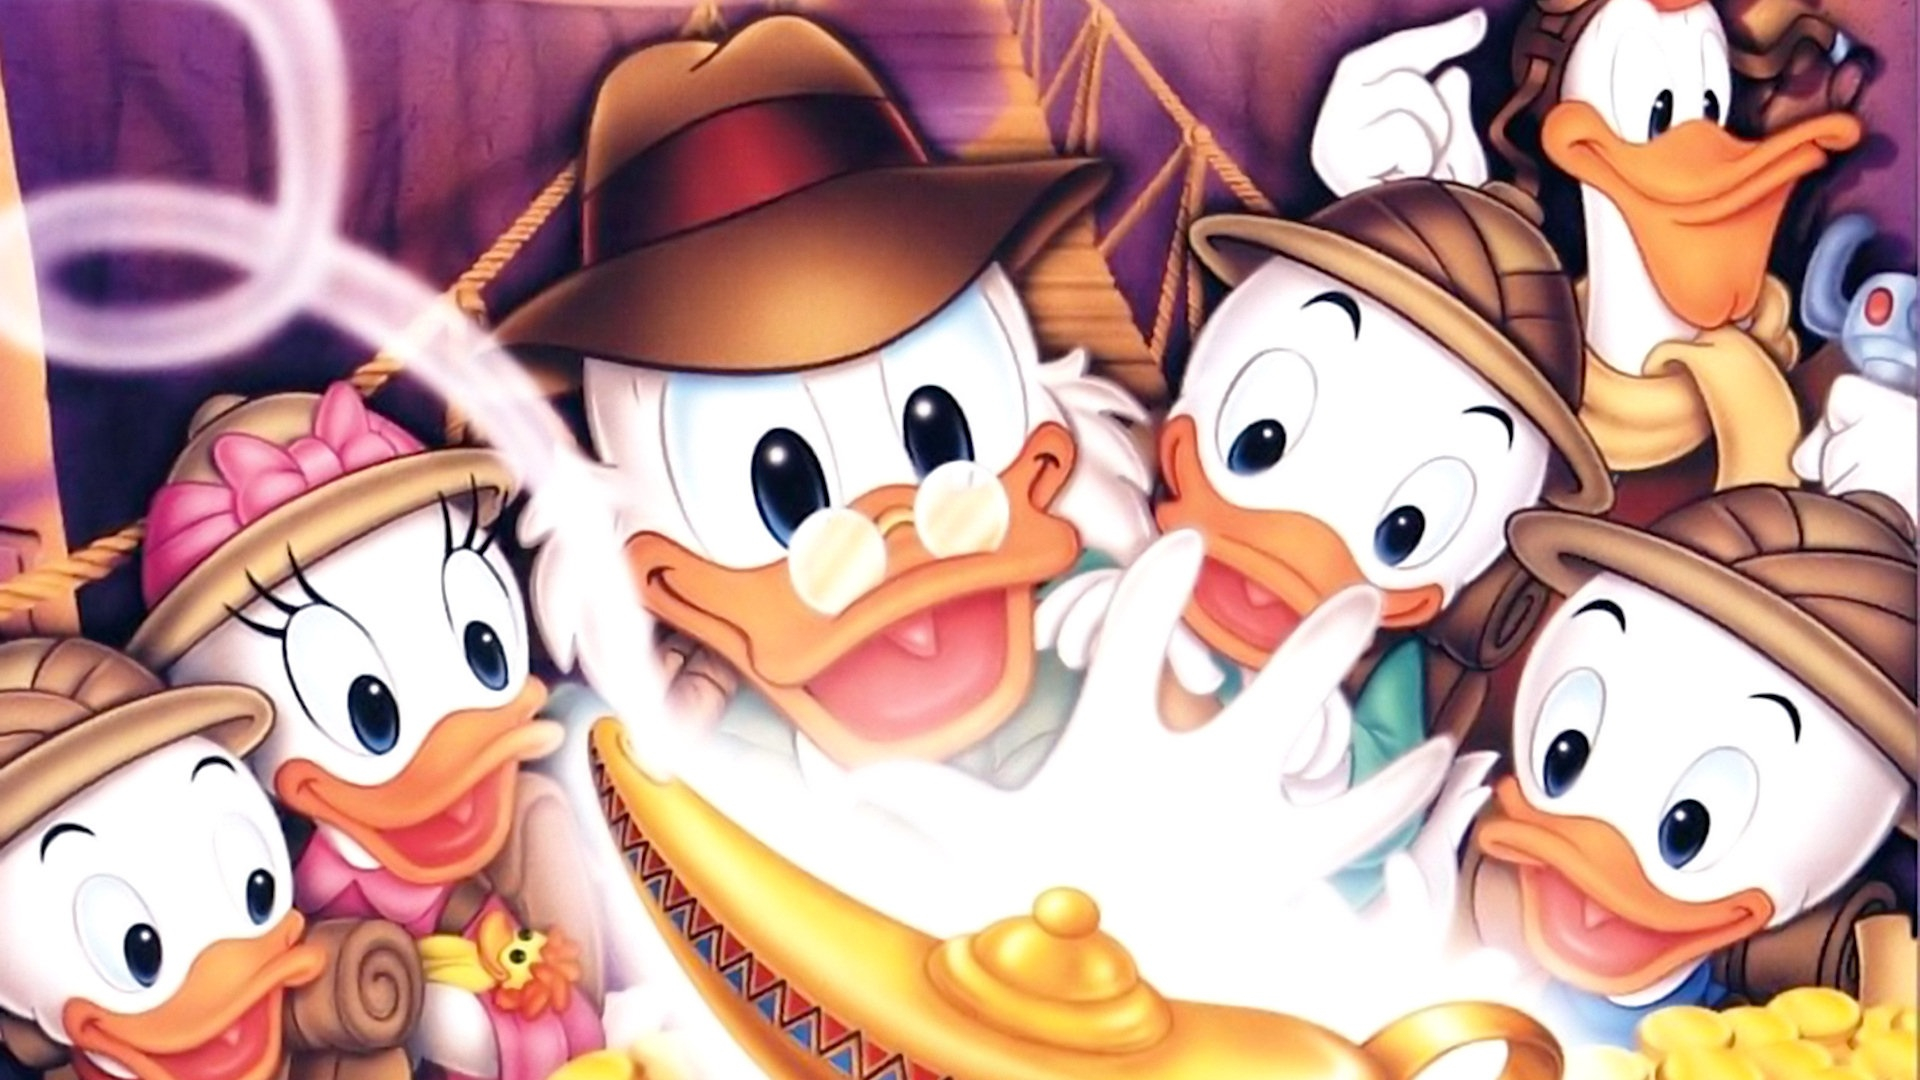 1920x1080 DuckTales Poster Uncle Scrooge McDuck Wallpaper (36806867) Fanpop